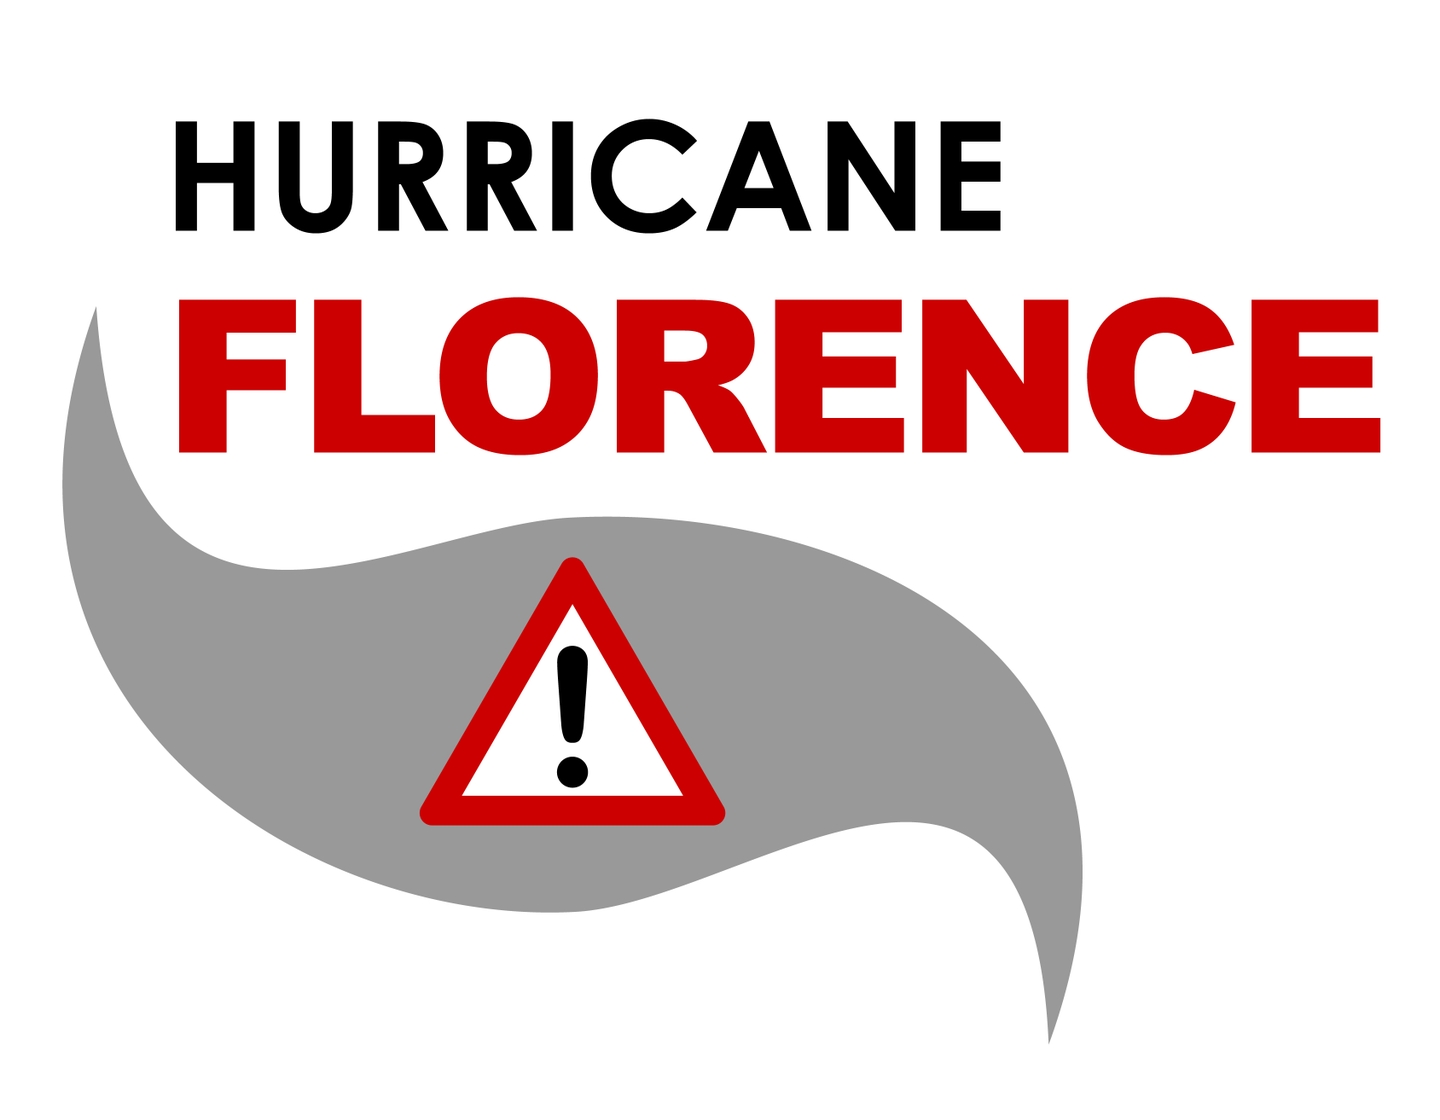 Hurricane Florence warning icon